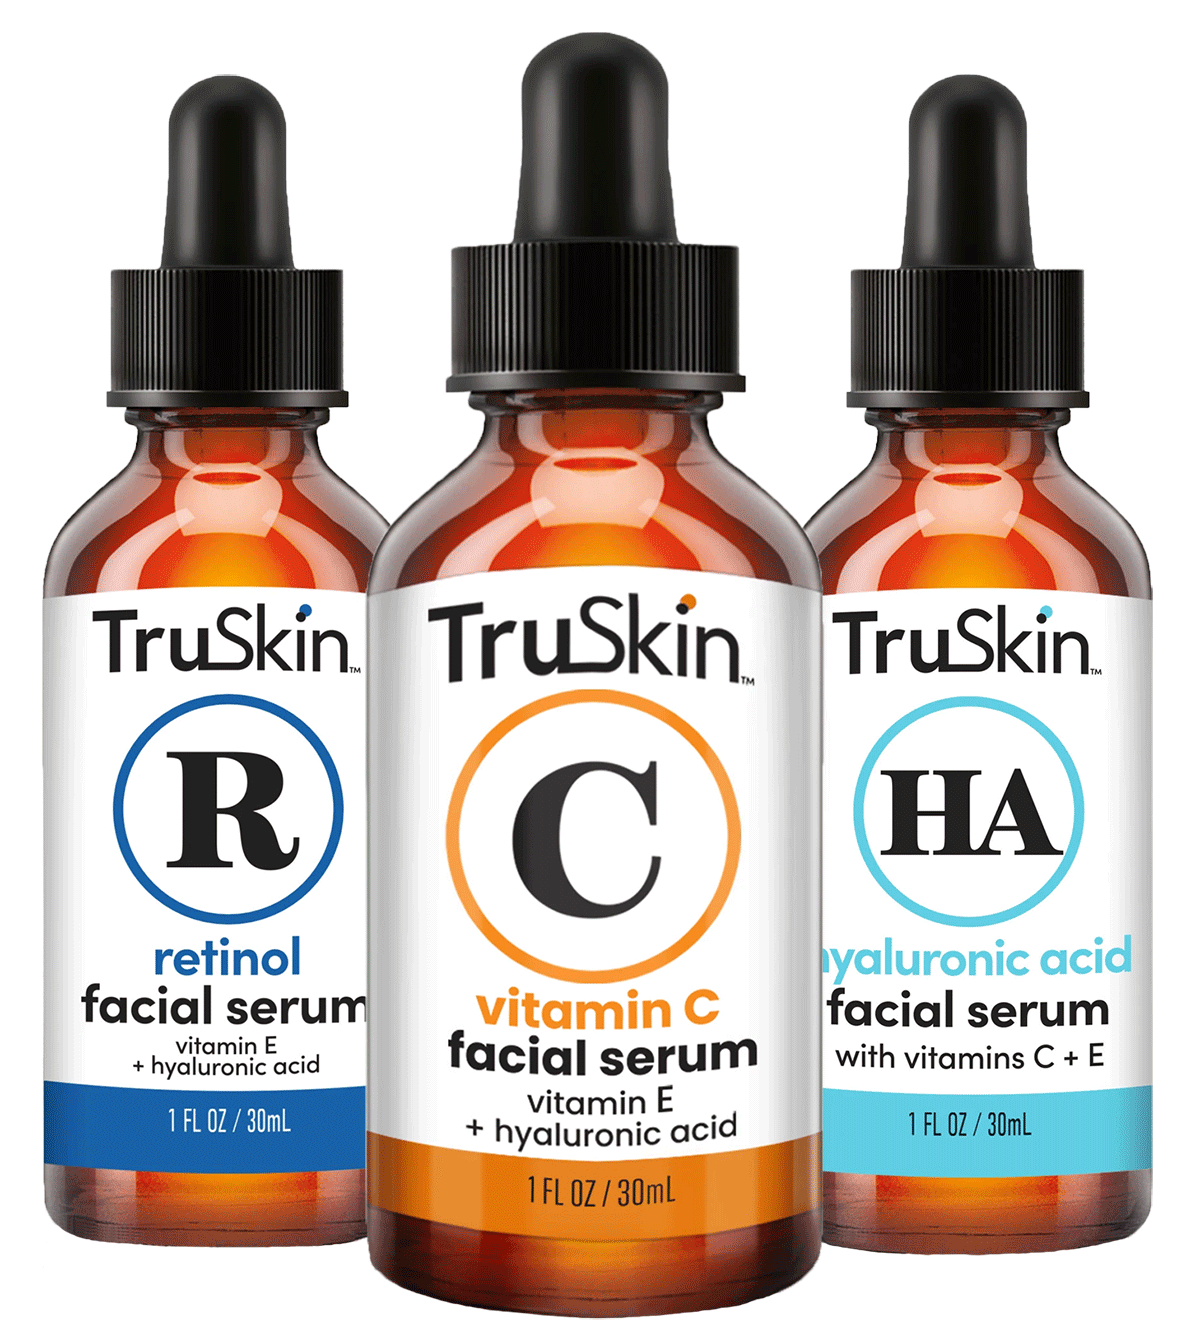 TruSkin Vitamin C, Retinol, and Hyaluronic Acid Facial Serum bottles